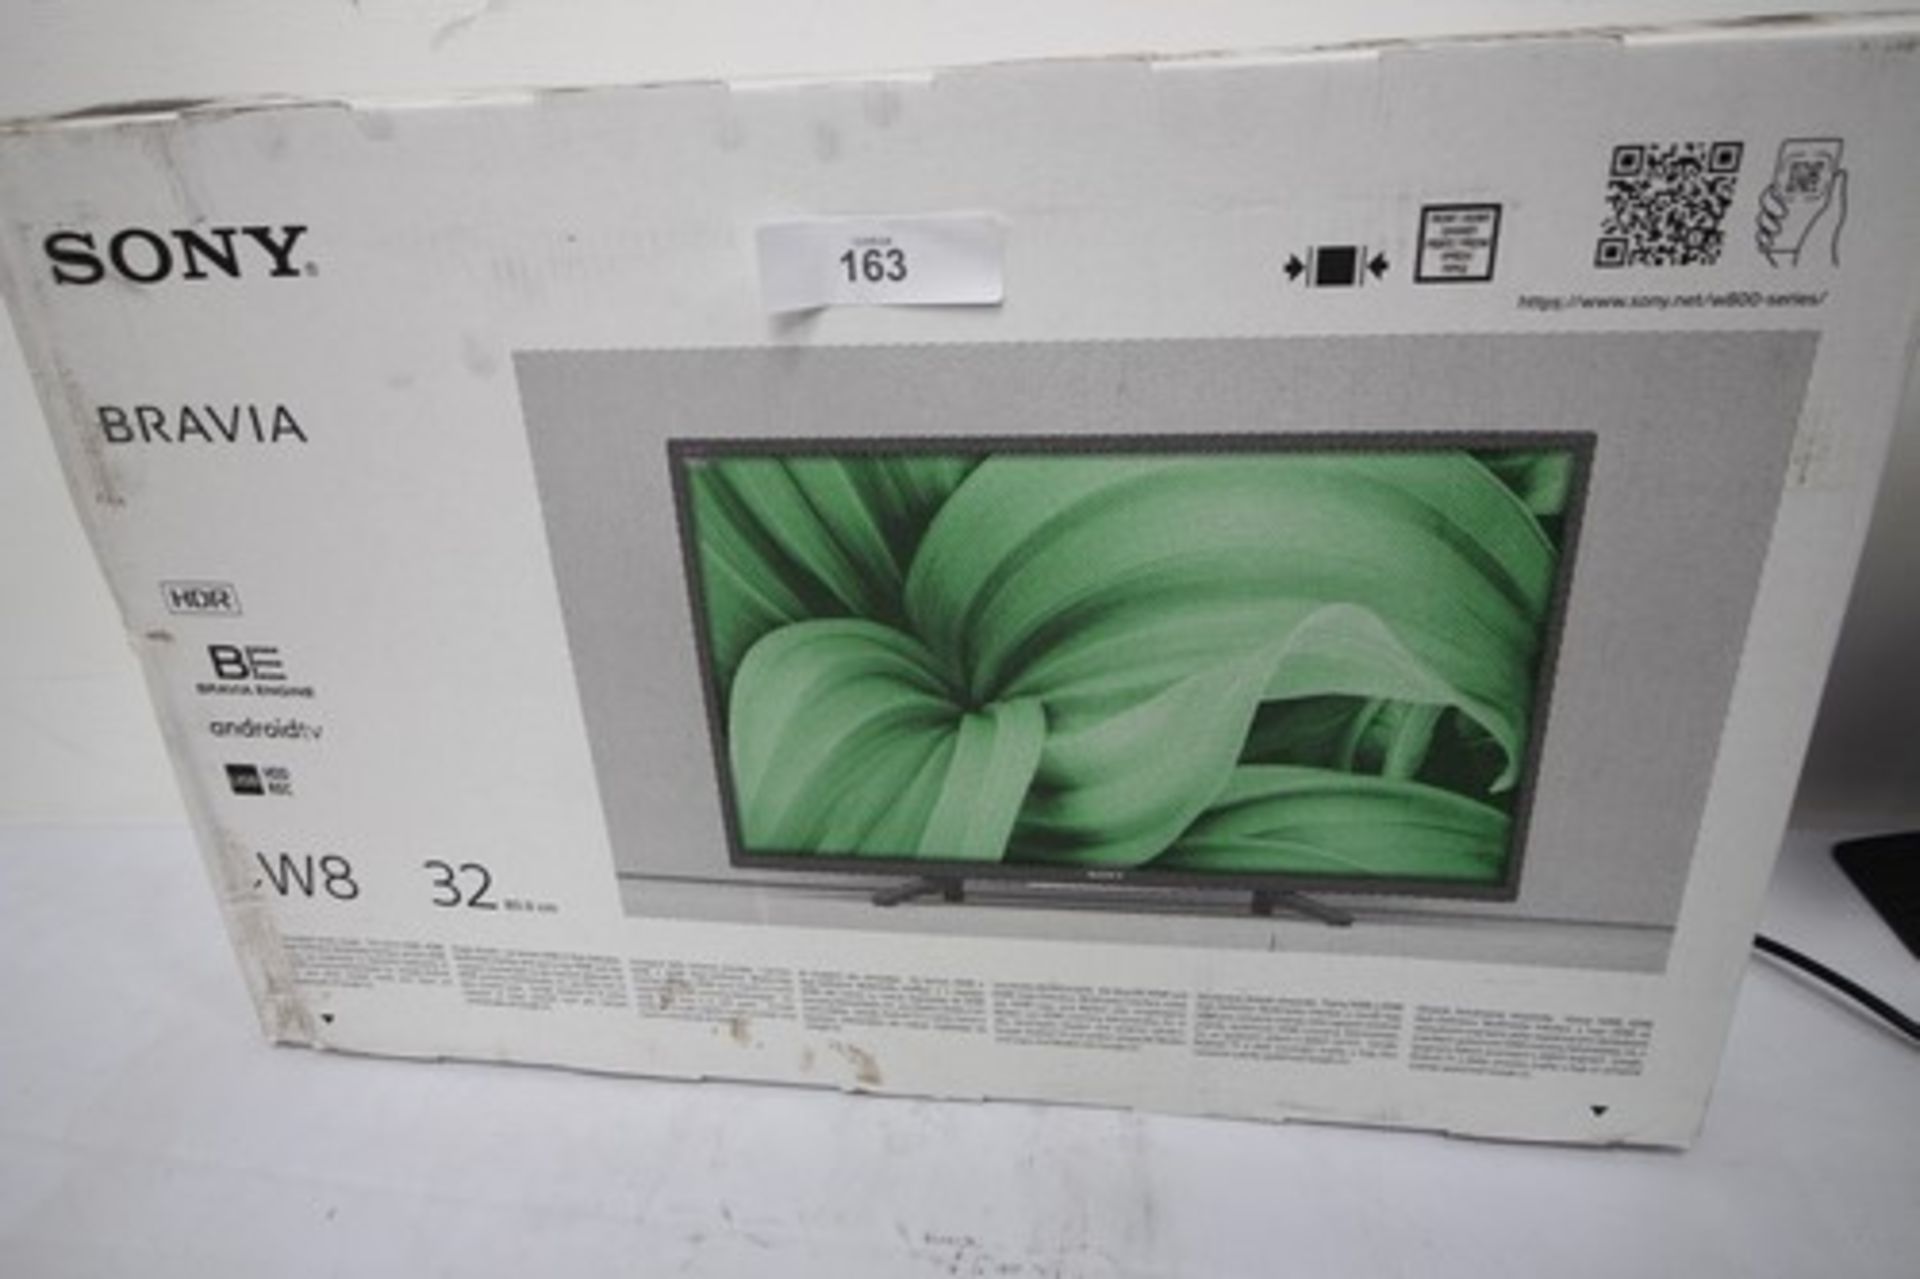 1 x Sony Bravia 32" TV, Model 32W800 - new in tatty box (ES2)